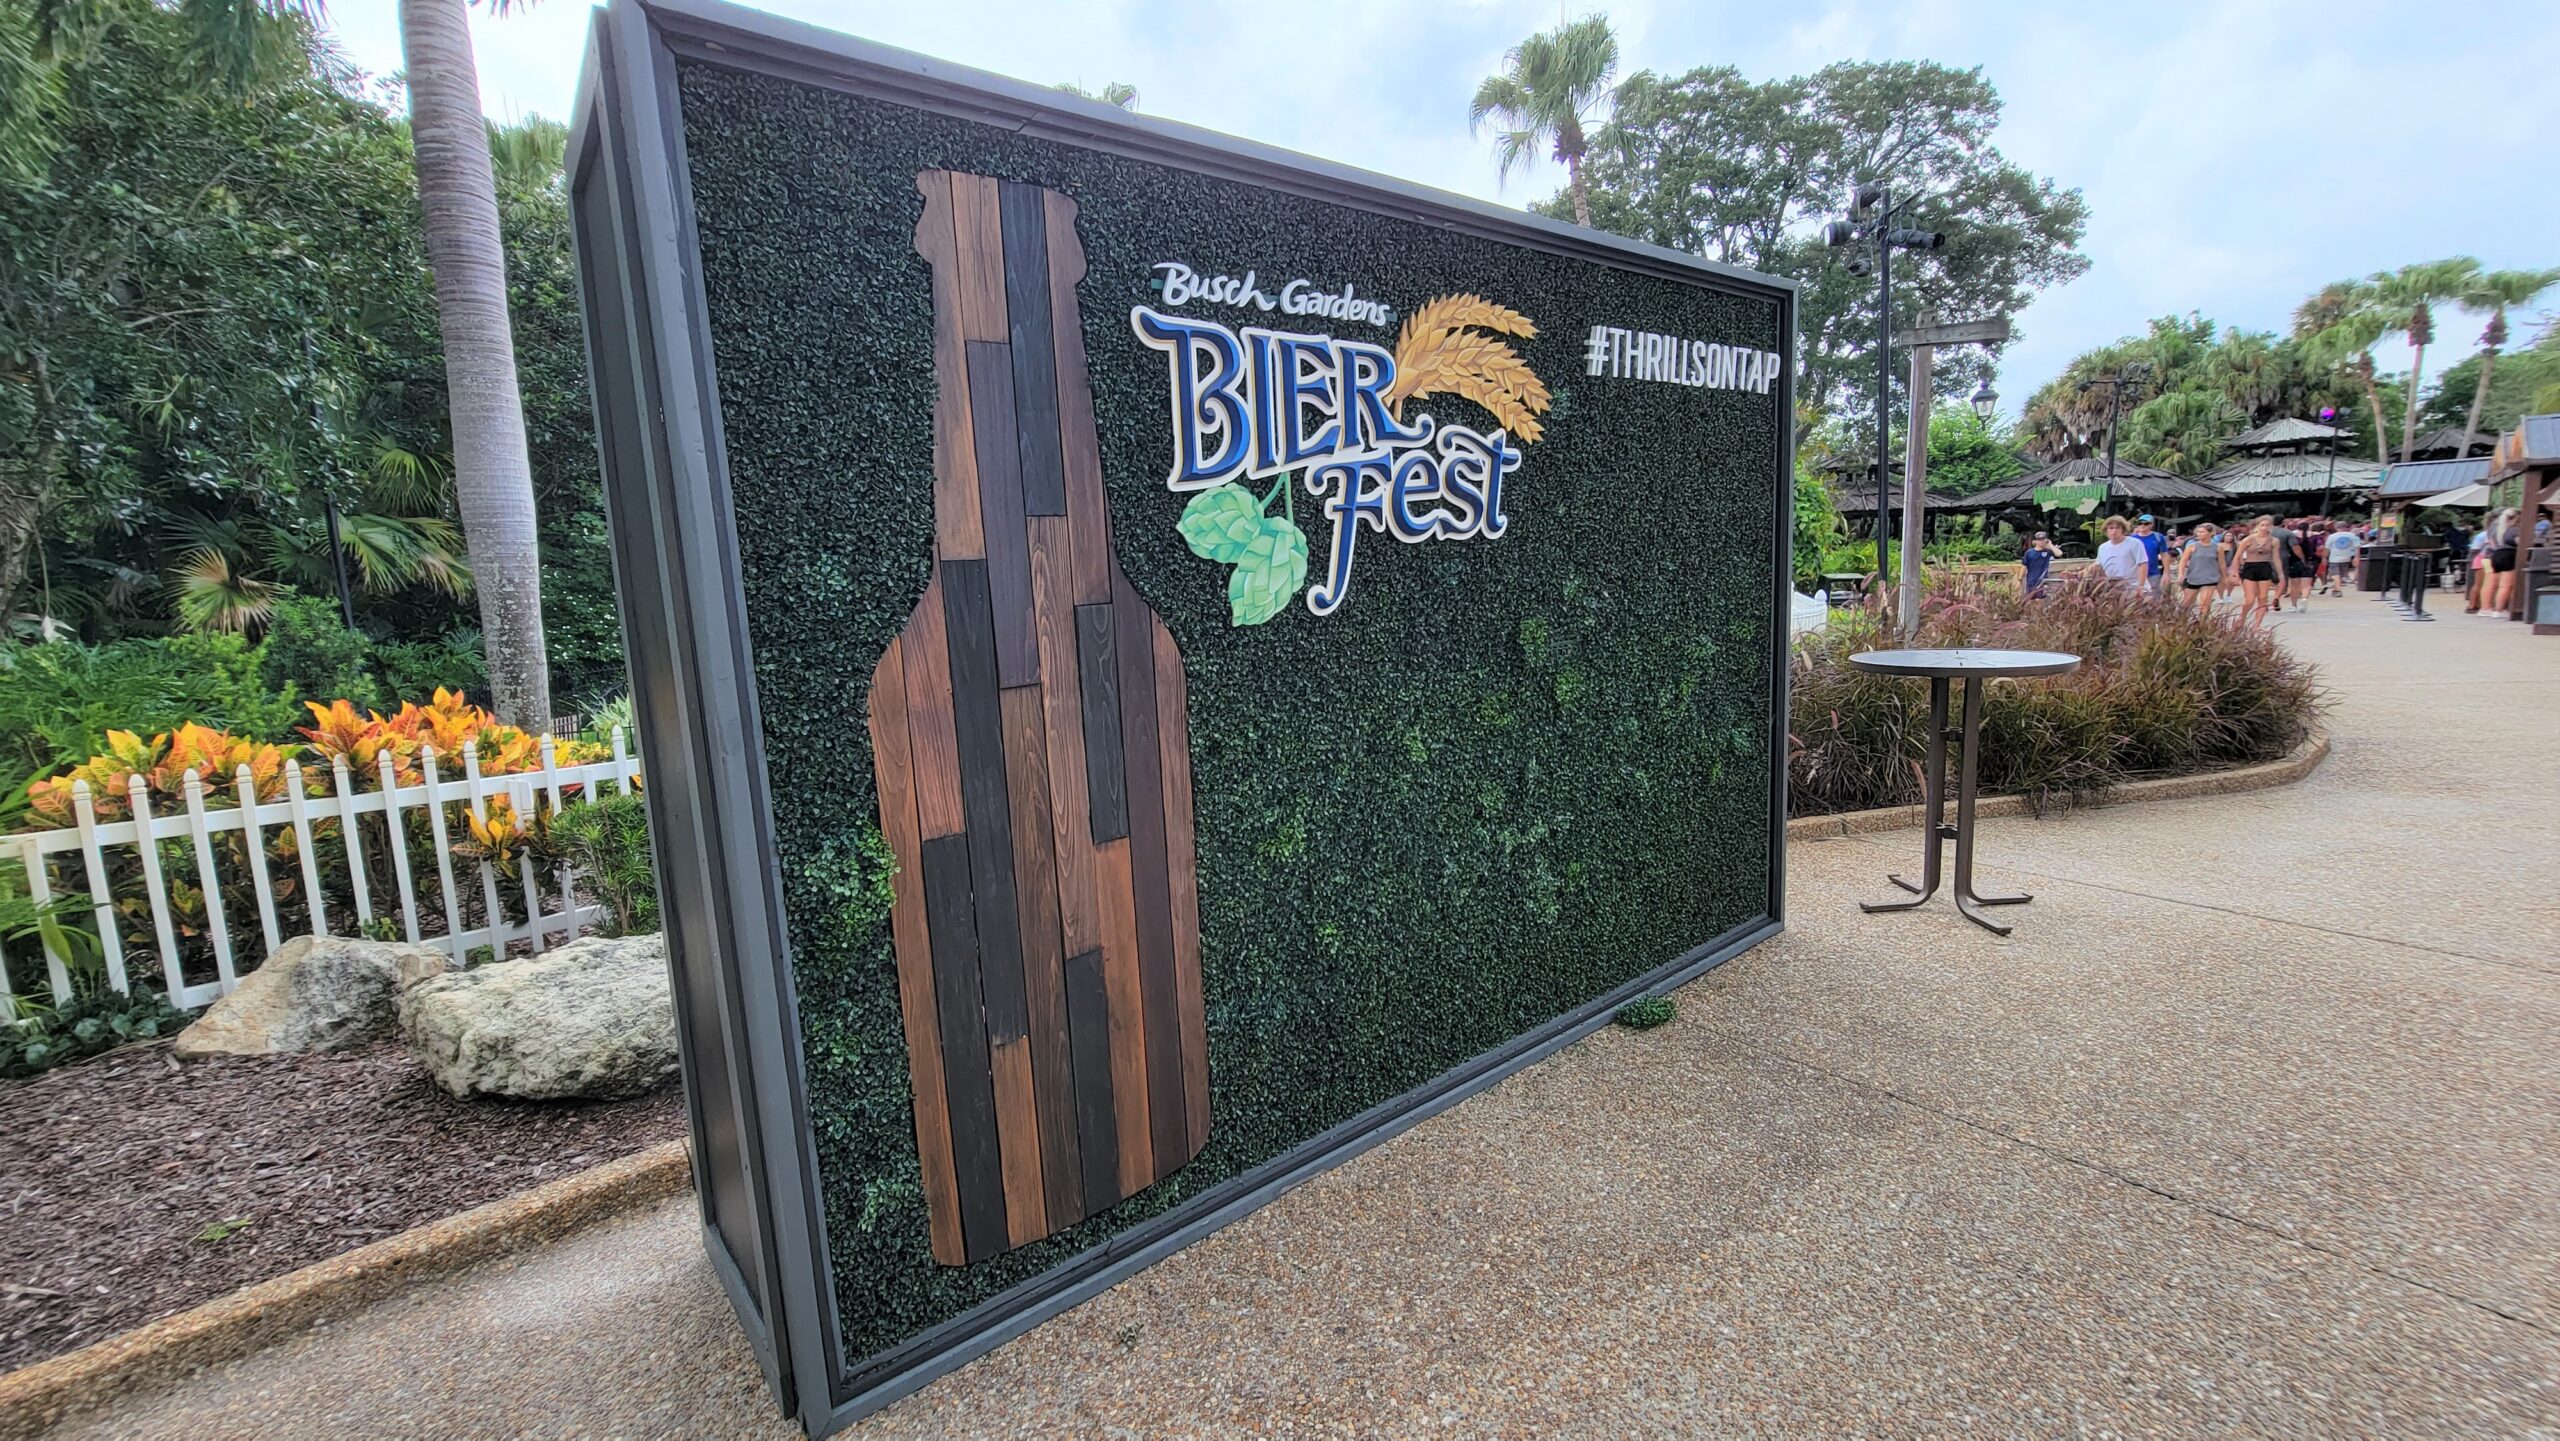 Busch Gardens Tampa Bay Bier Fest & General Park Update 2023!